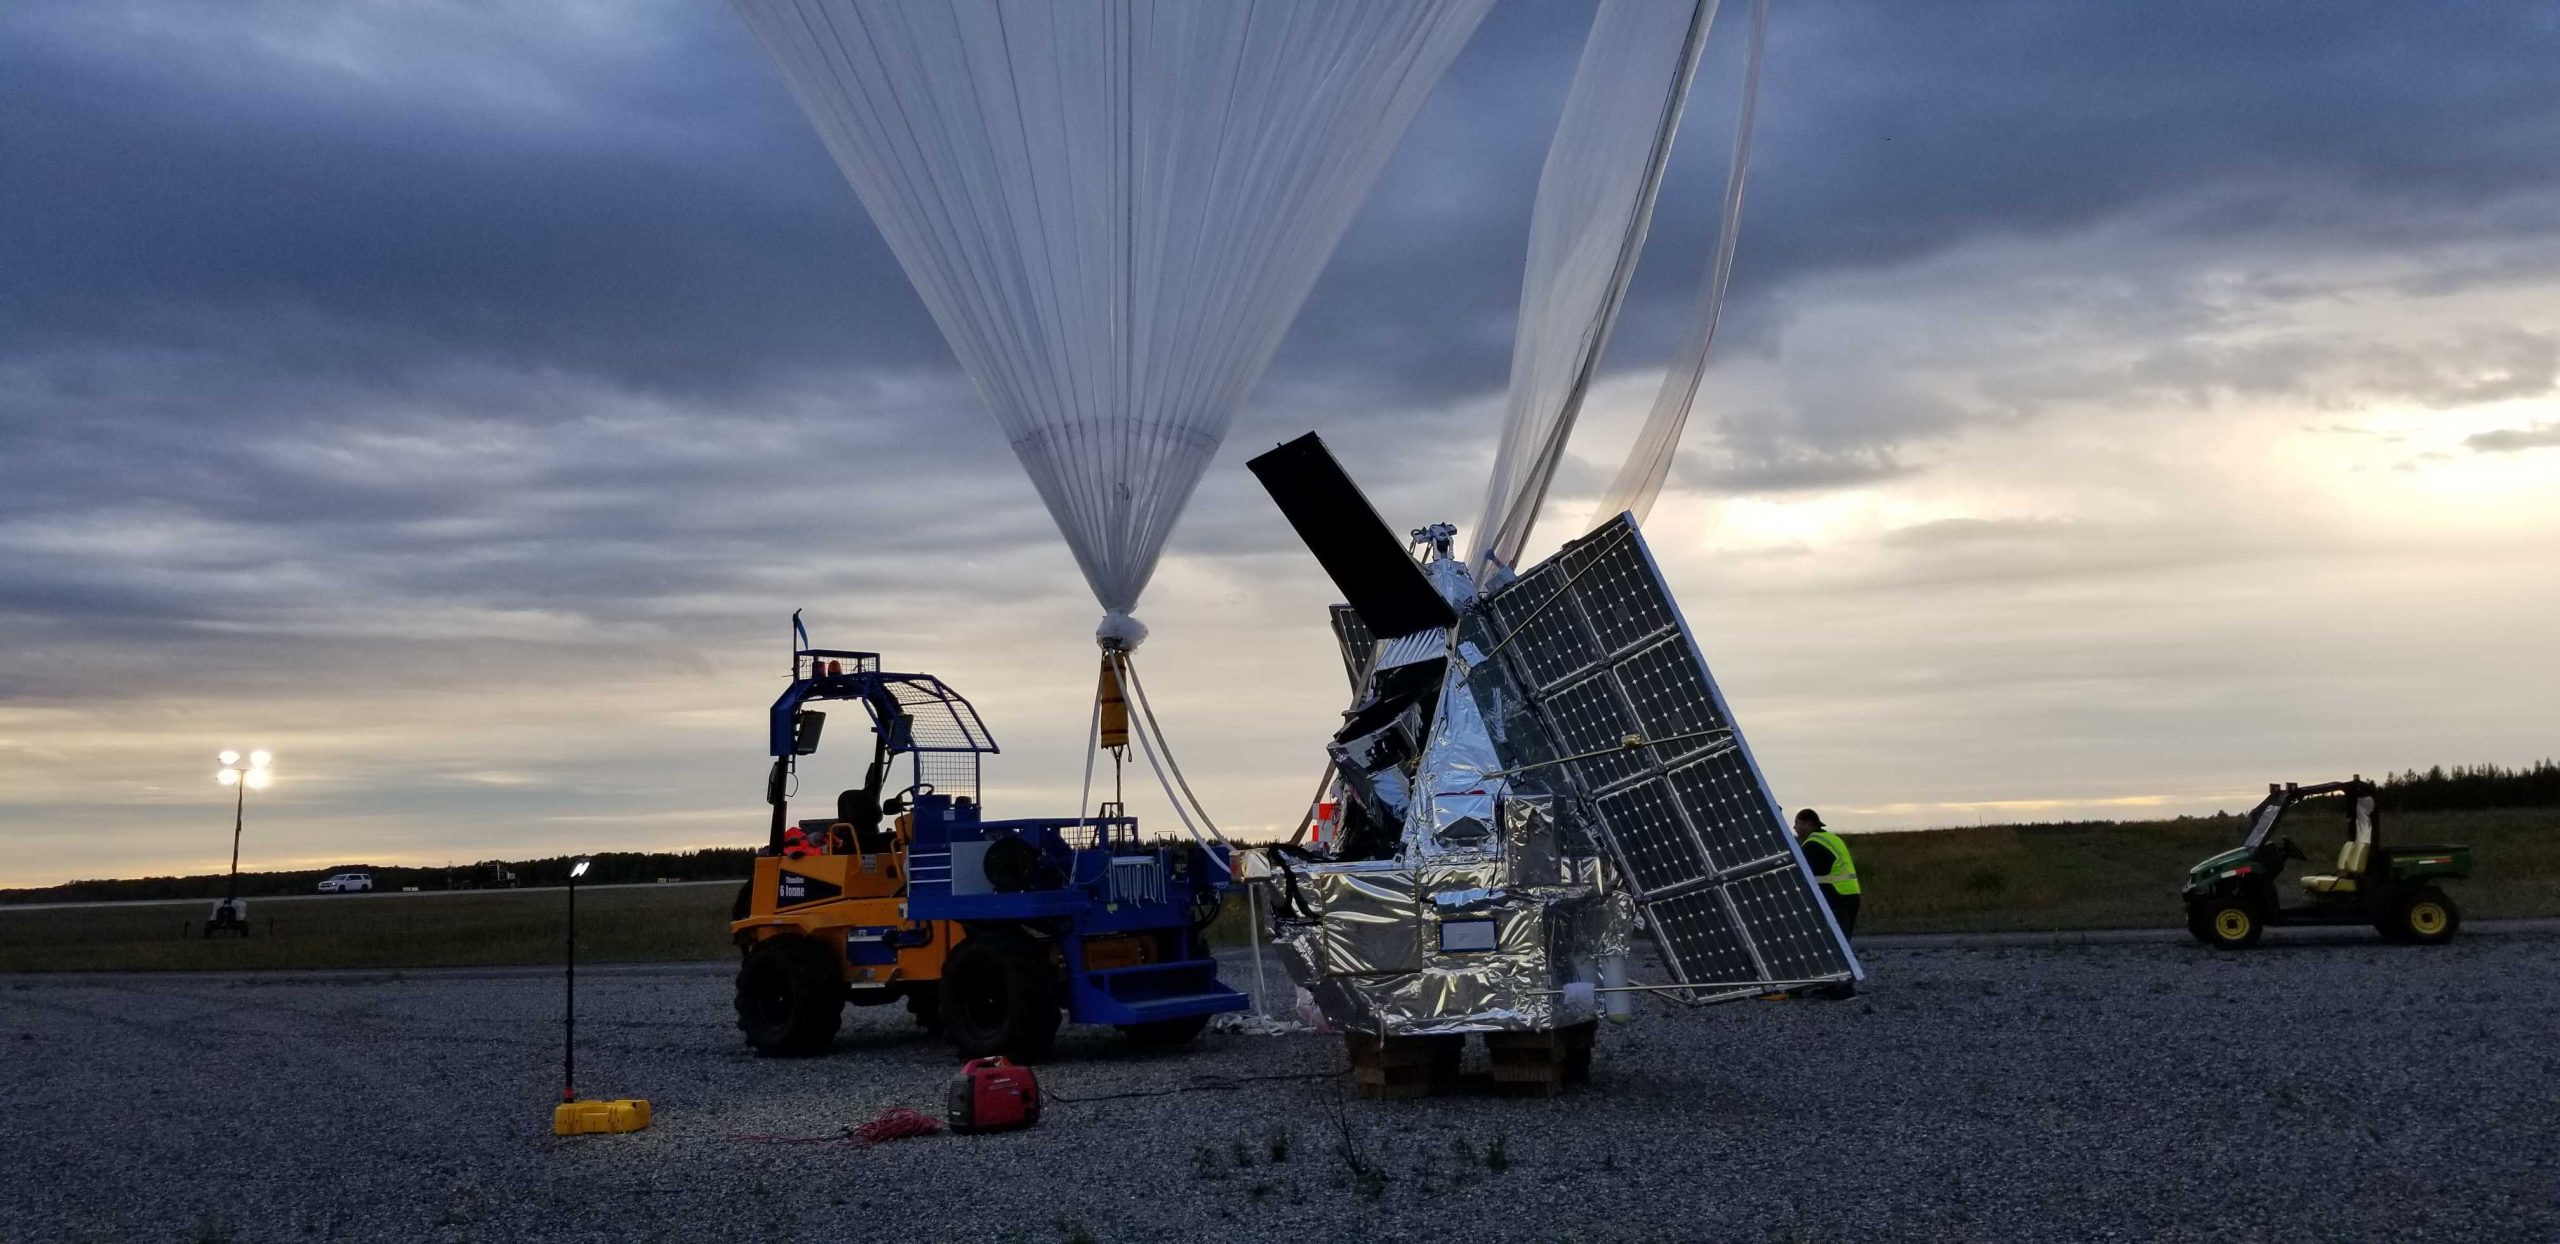 ΝΑSA: Το αερόστατο SuperBIT κυκλοφόρησε τις πρώτες του ερευνητικές εικόνες (βίντεο)